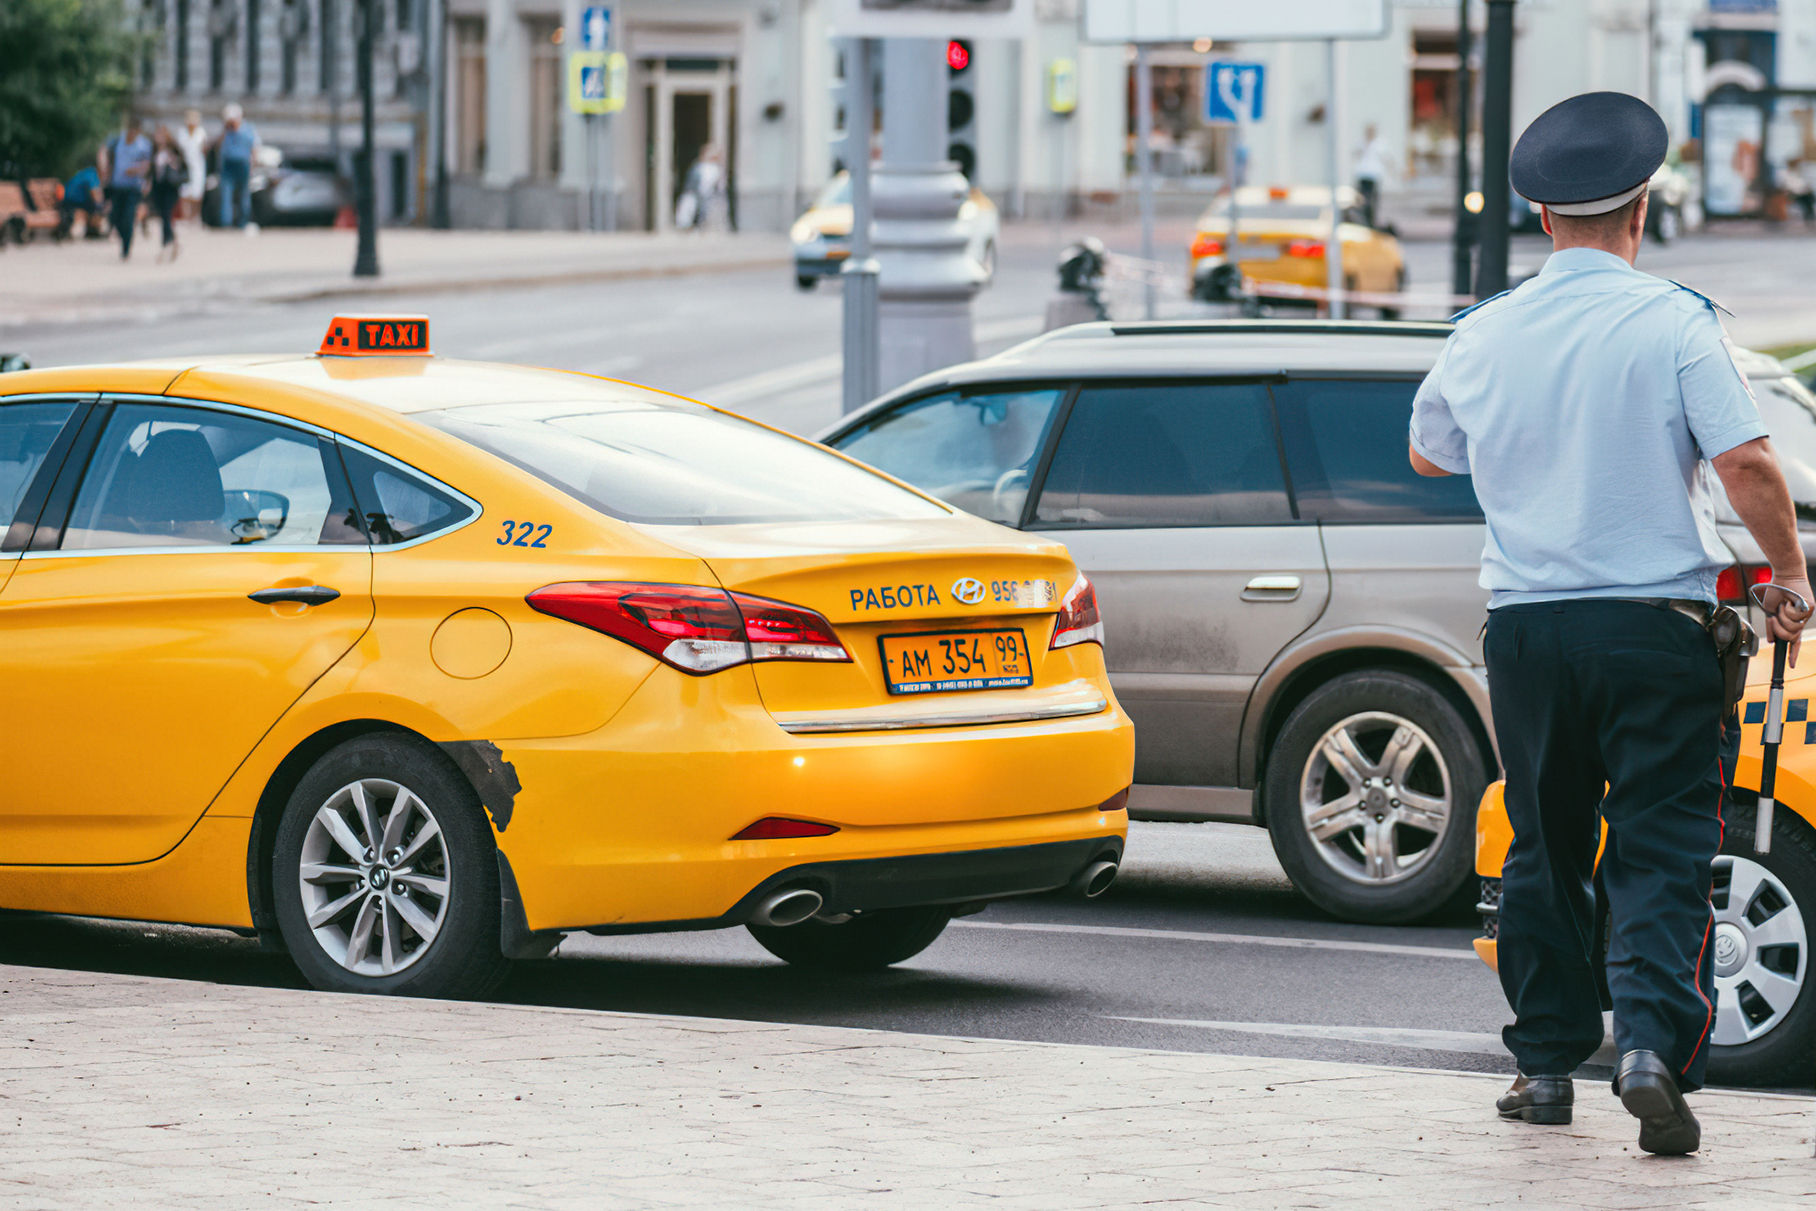 ФСБ хотят открыть доступ к базам заказов такси